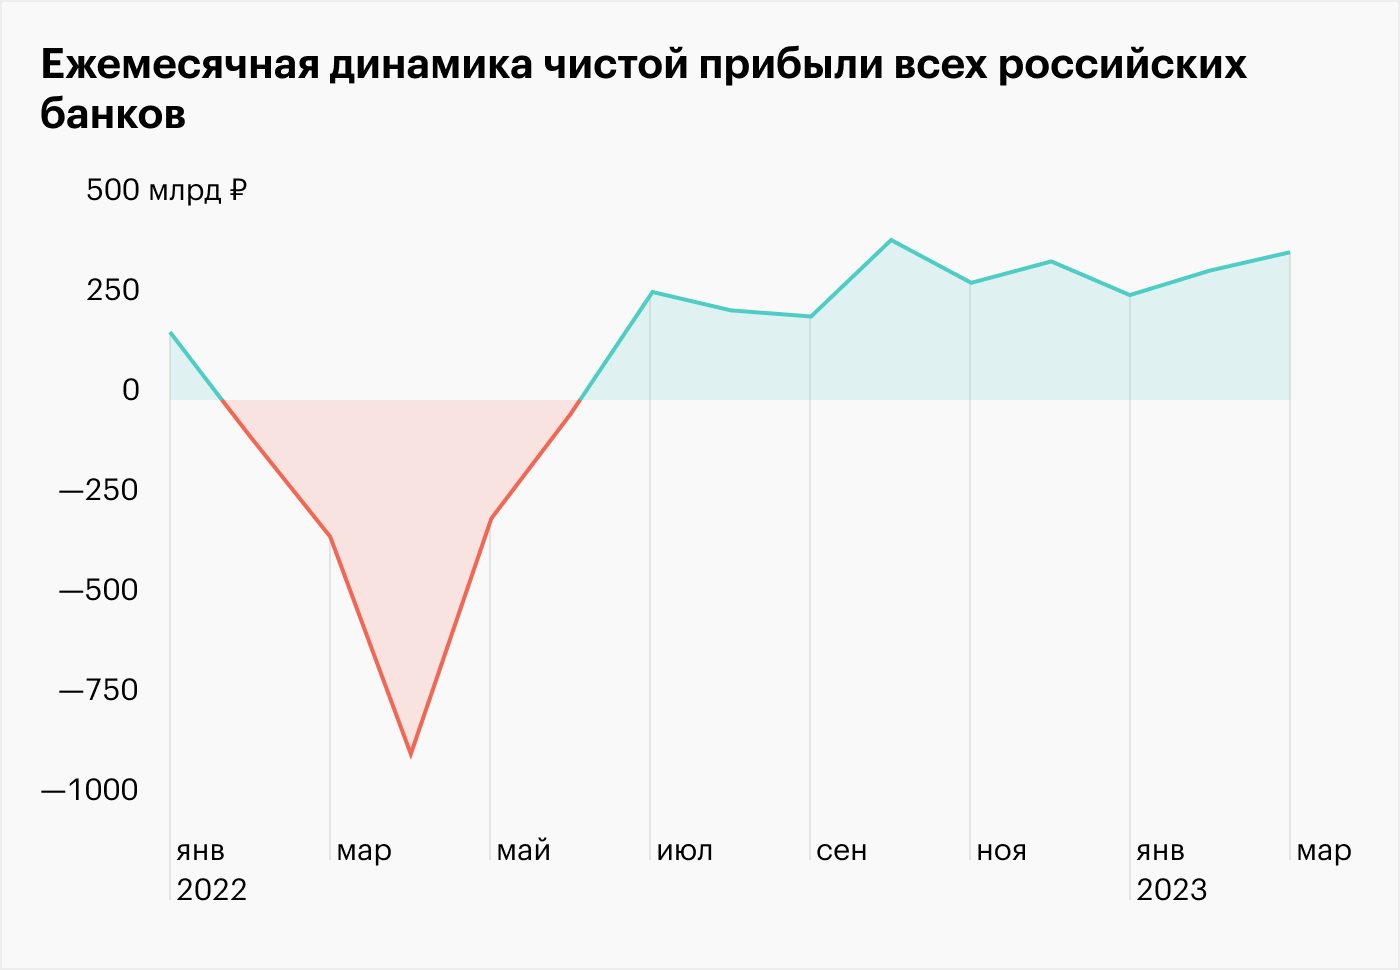 Российские банки заработали рекордную прибыль в 1 квартале 2023 года. Как им это удалось